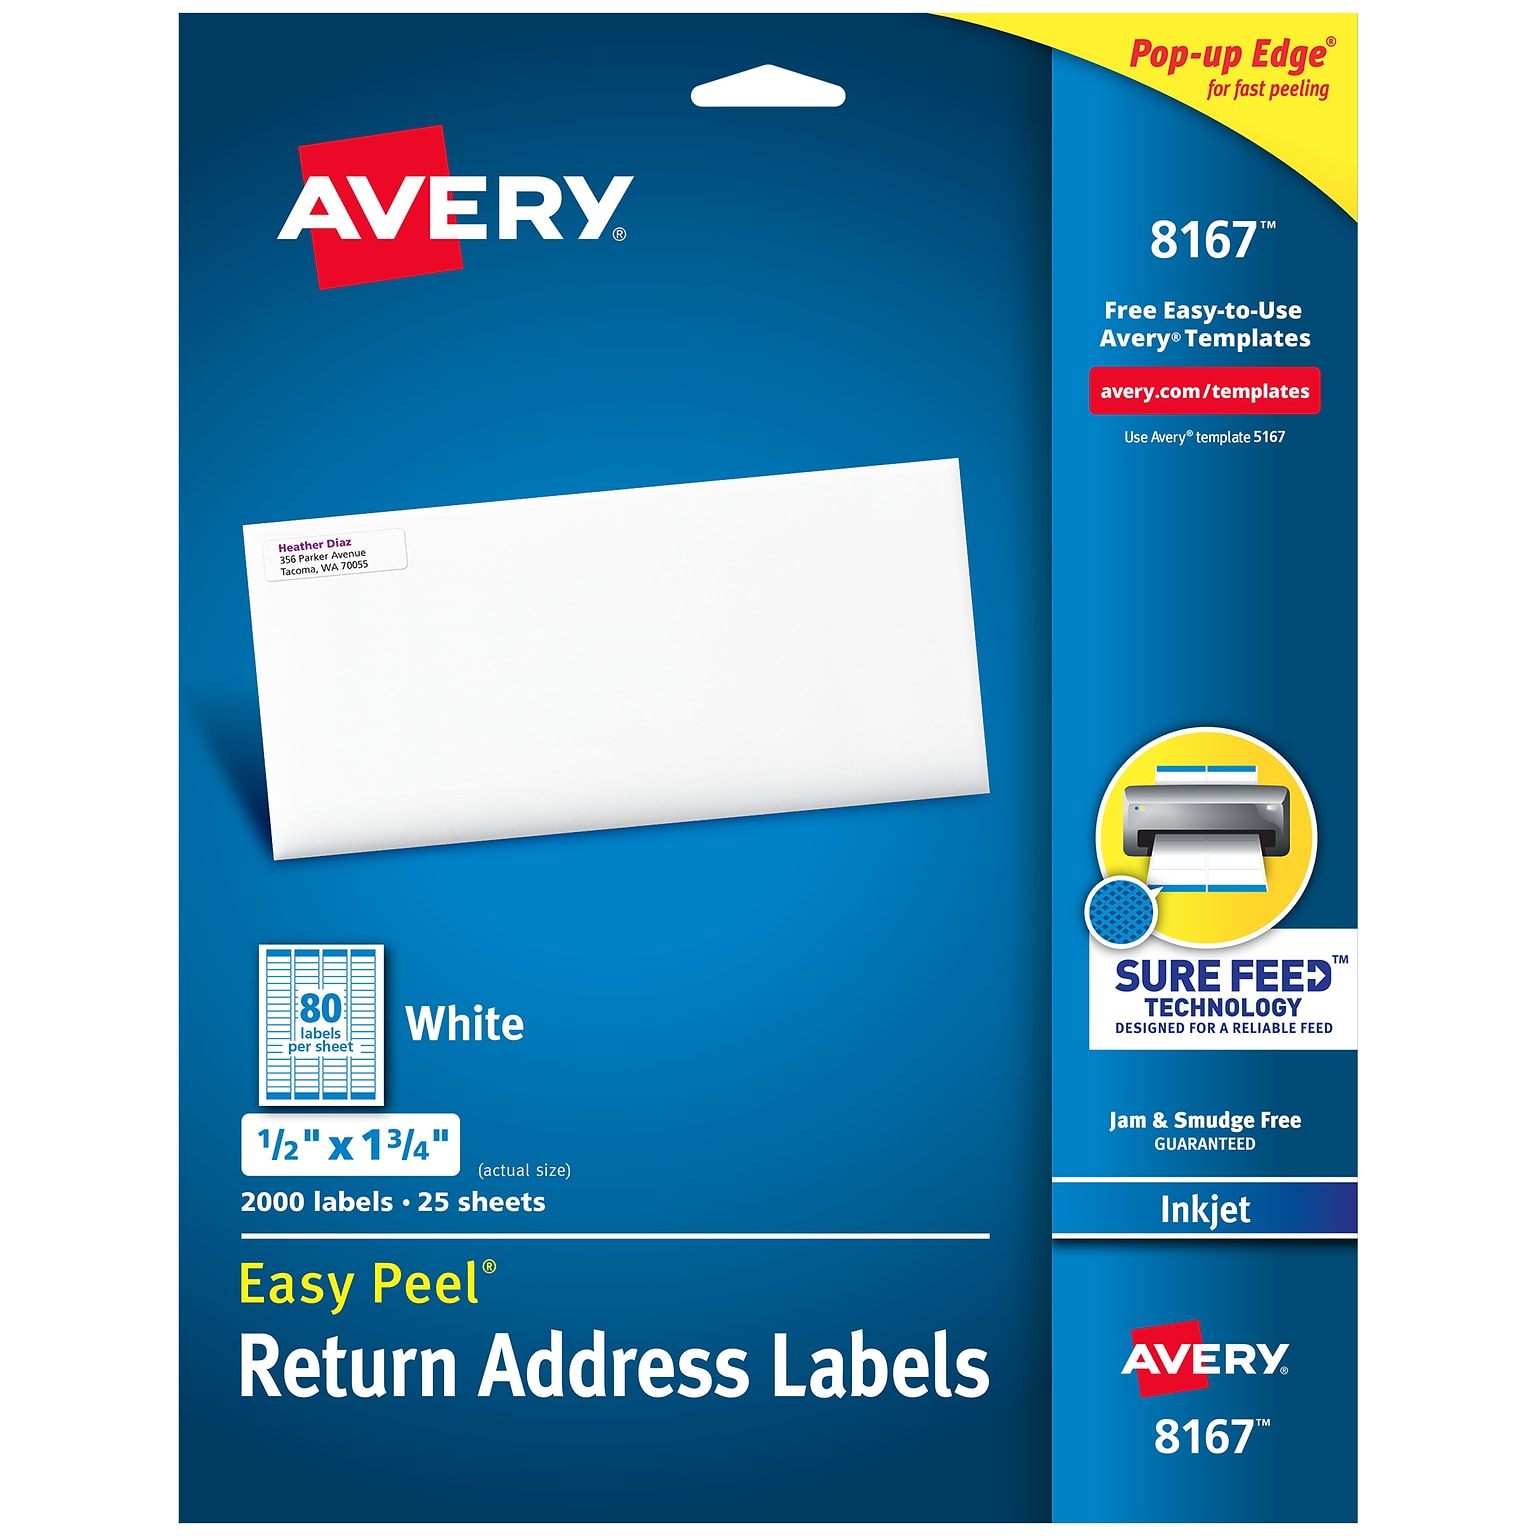 Avery Easy Peel Inkjet Return Address Labels, 1/2 x 1-3/4, White, 80 Labels/Sheet, 25 Sheets/Pack  (8167)